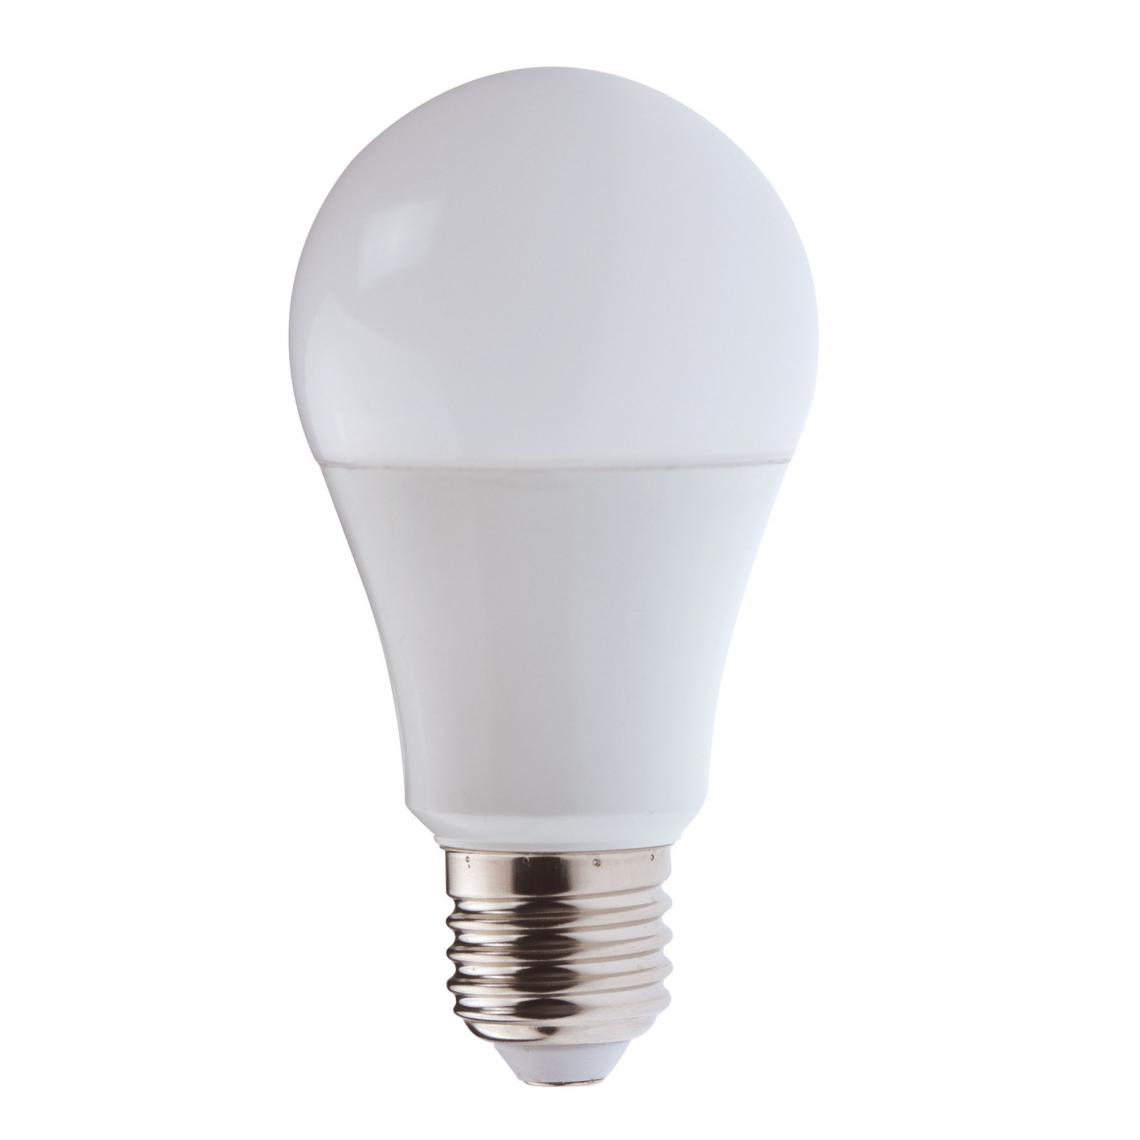 Velamp - Ampoule LED SMD, standard A65, 20W / 2300lm, culot E27, 3000K - Ampoules LED